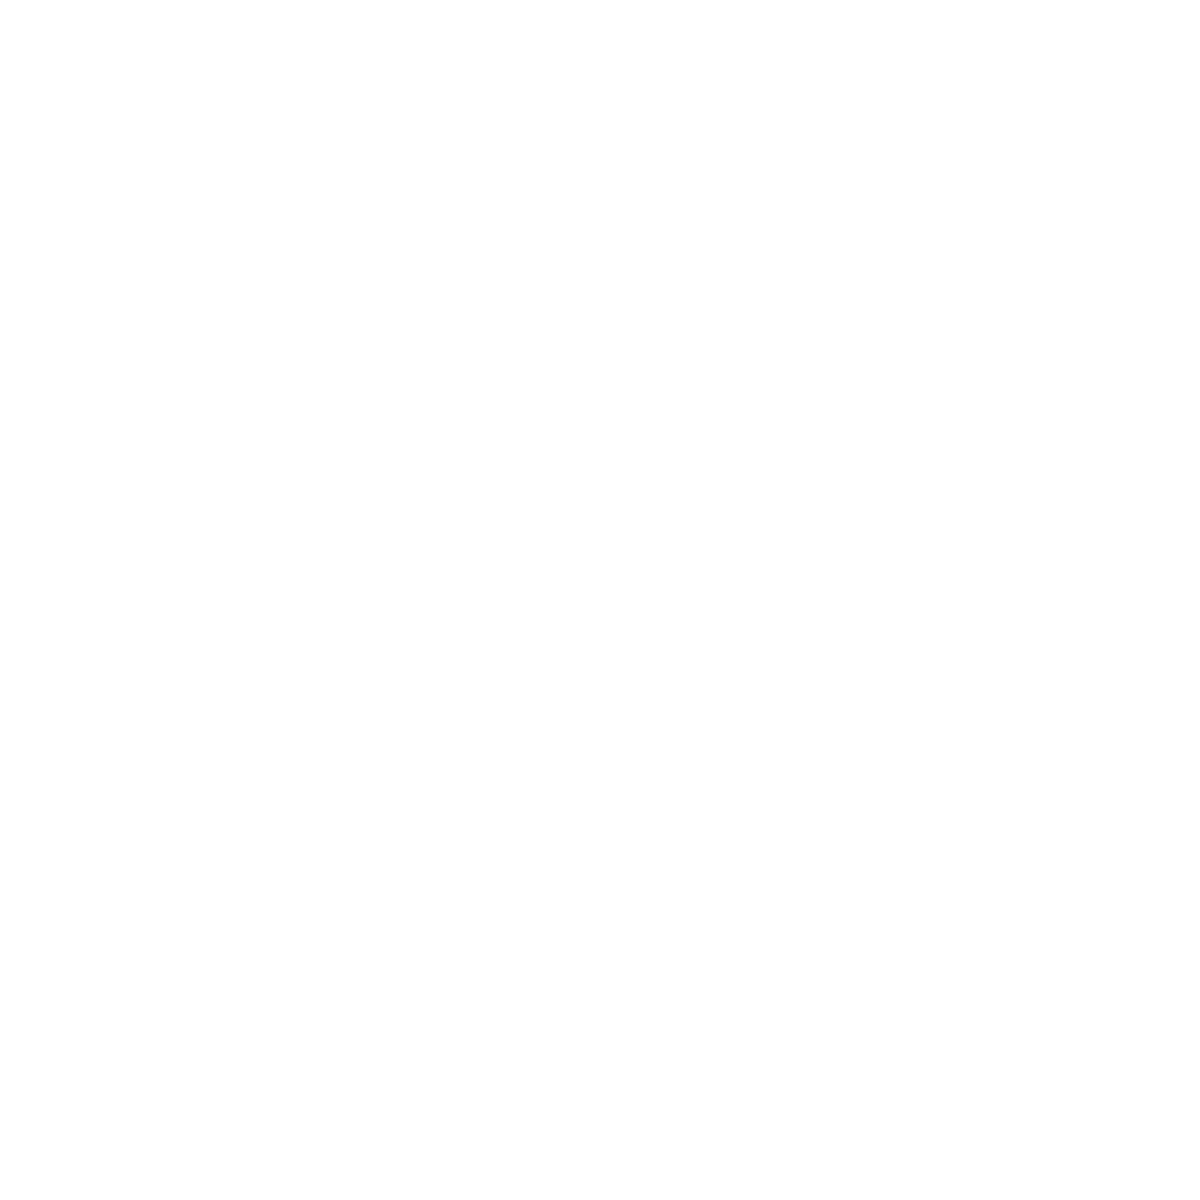 Protector Brewing